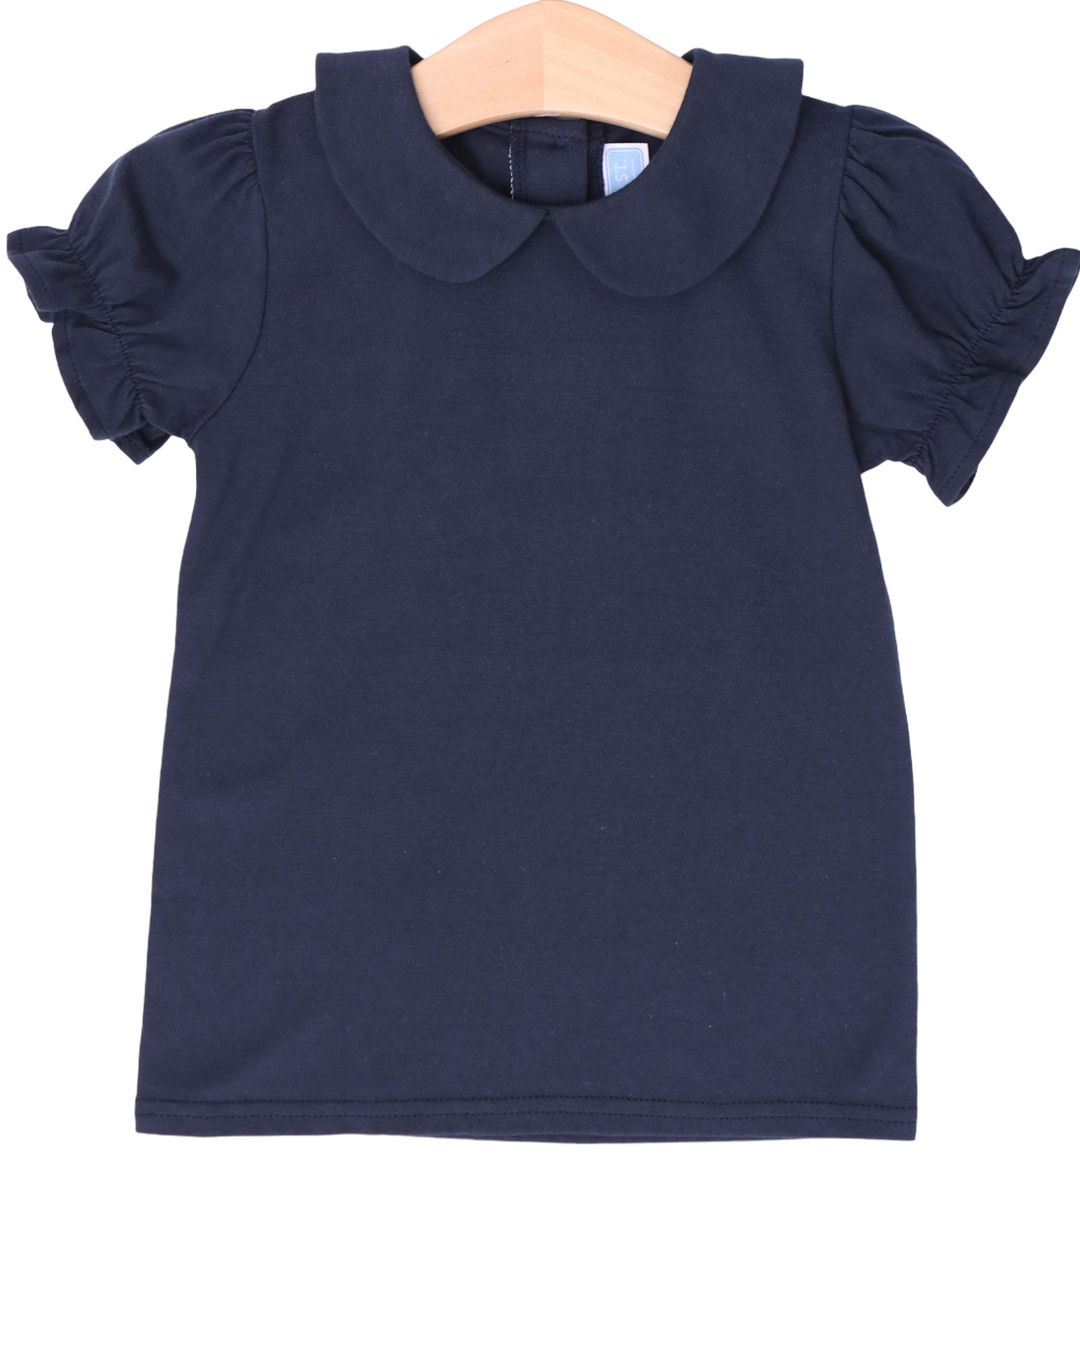 Peter Pan Collar Shirt- Navy, front